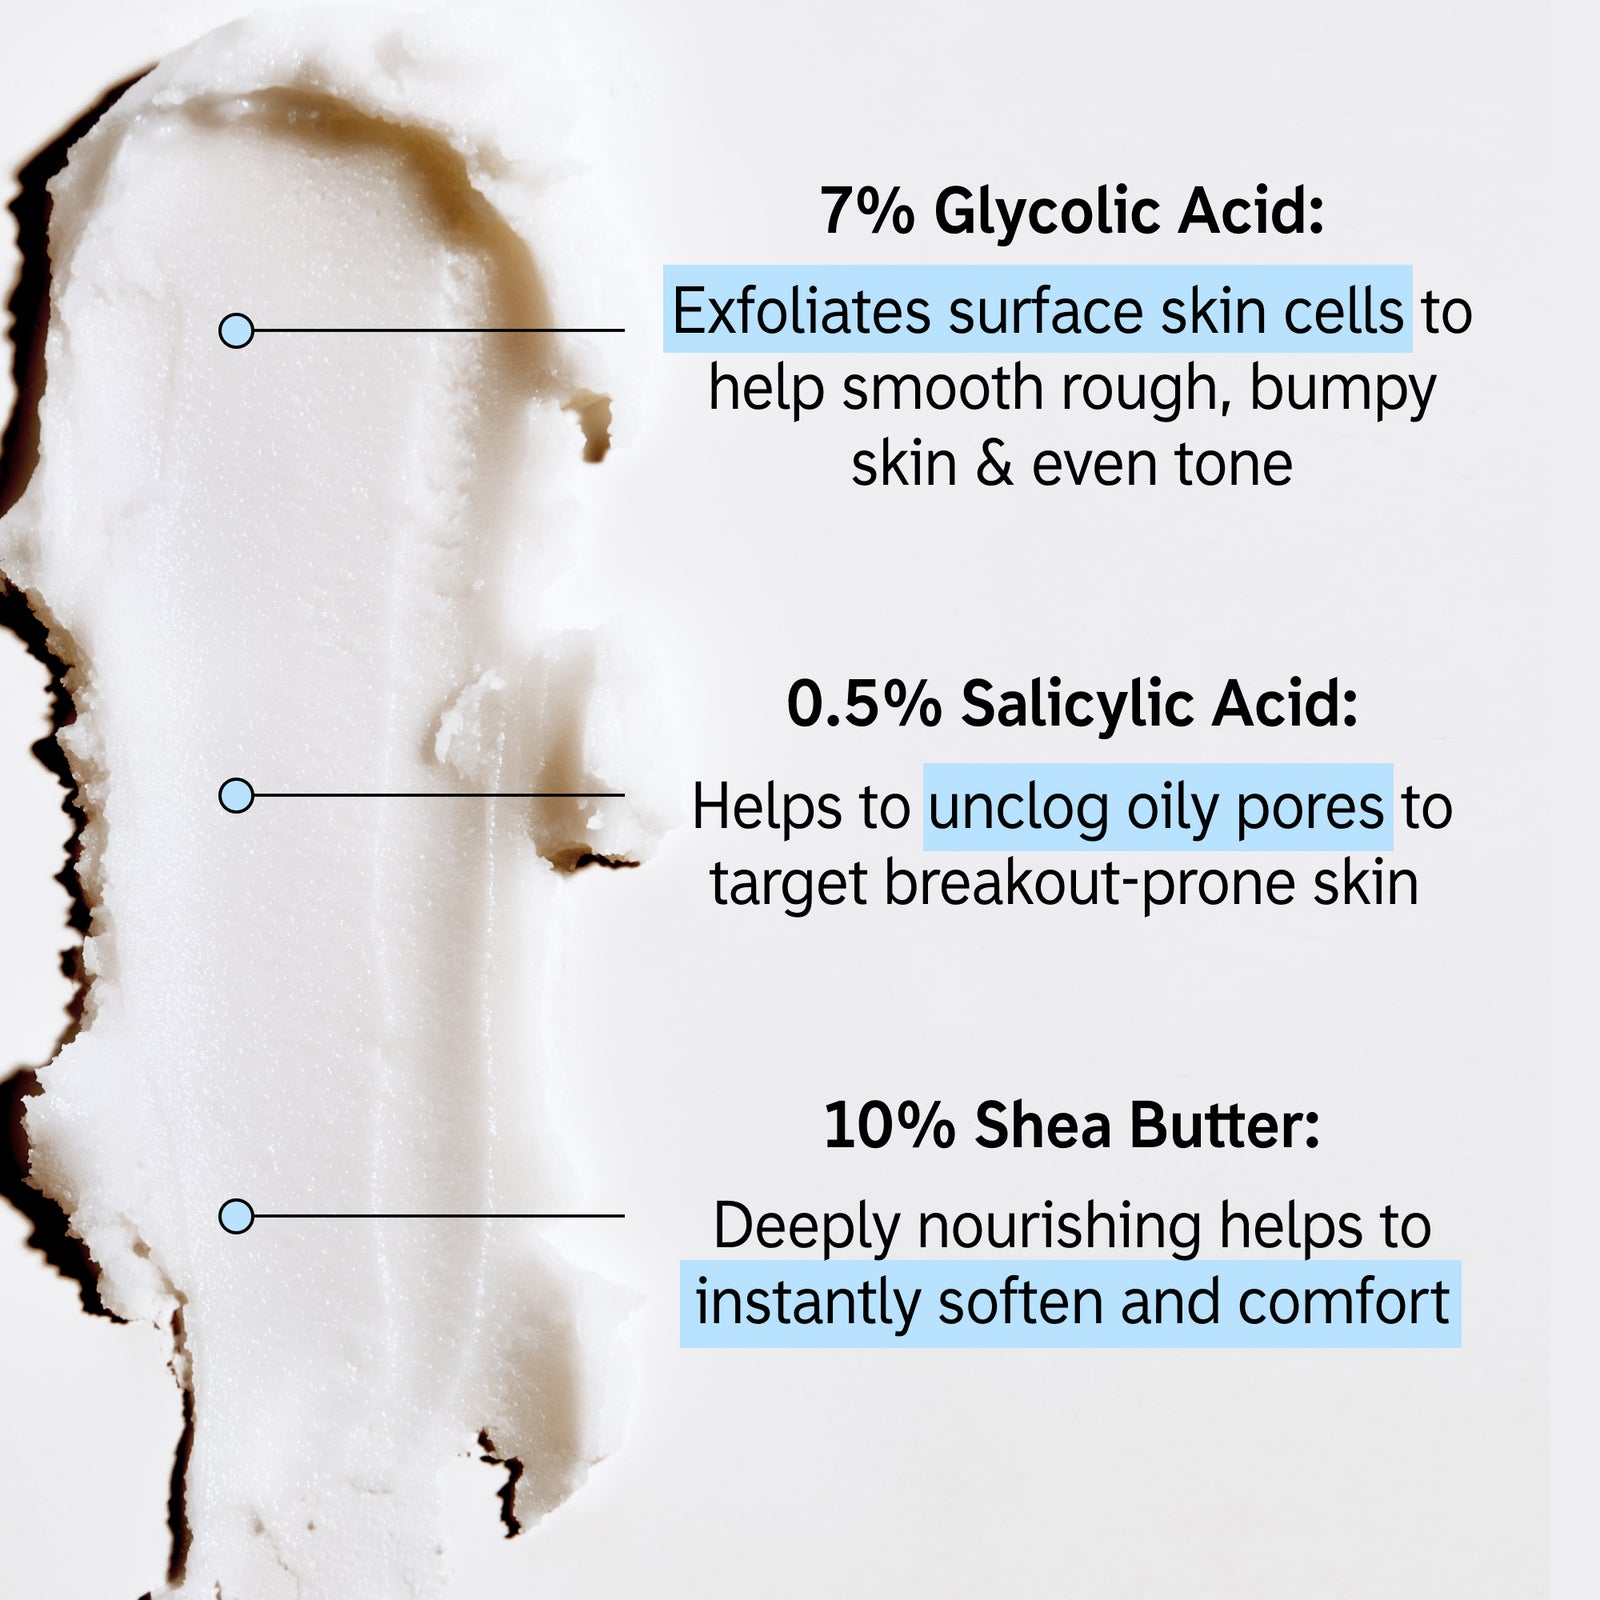 Key ingredients in Glycolic Body Stick